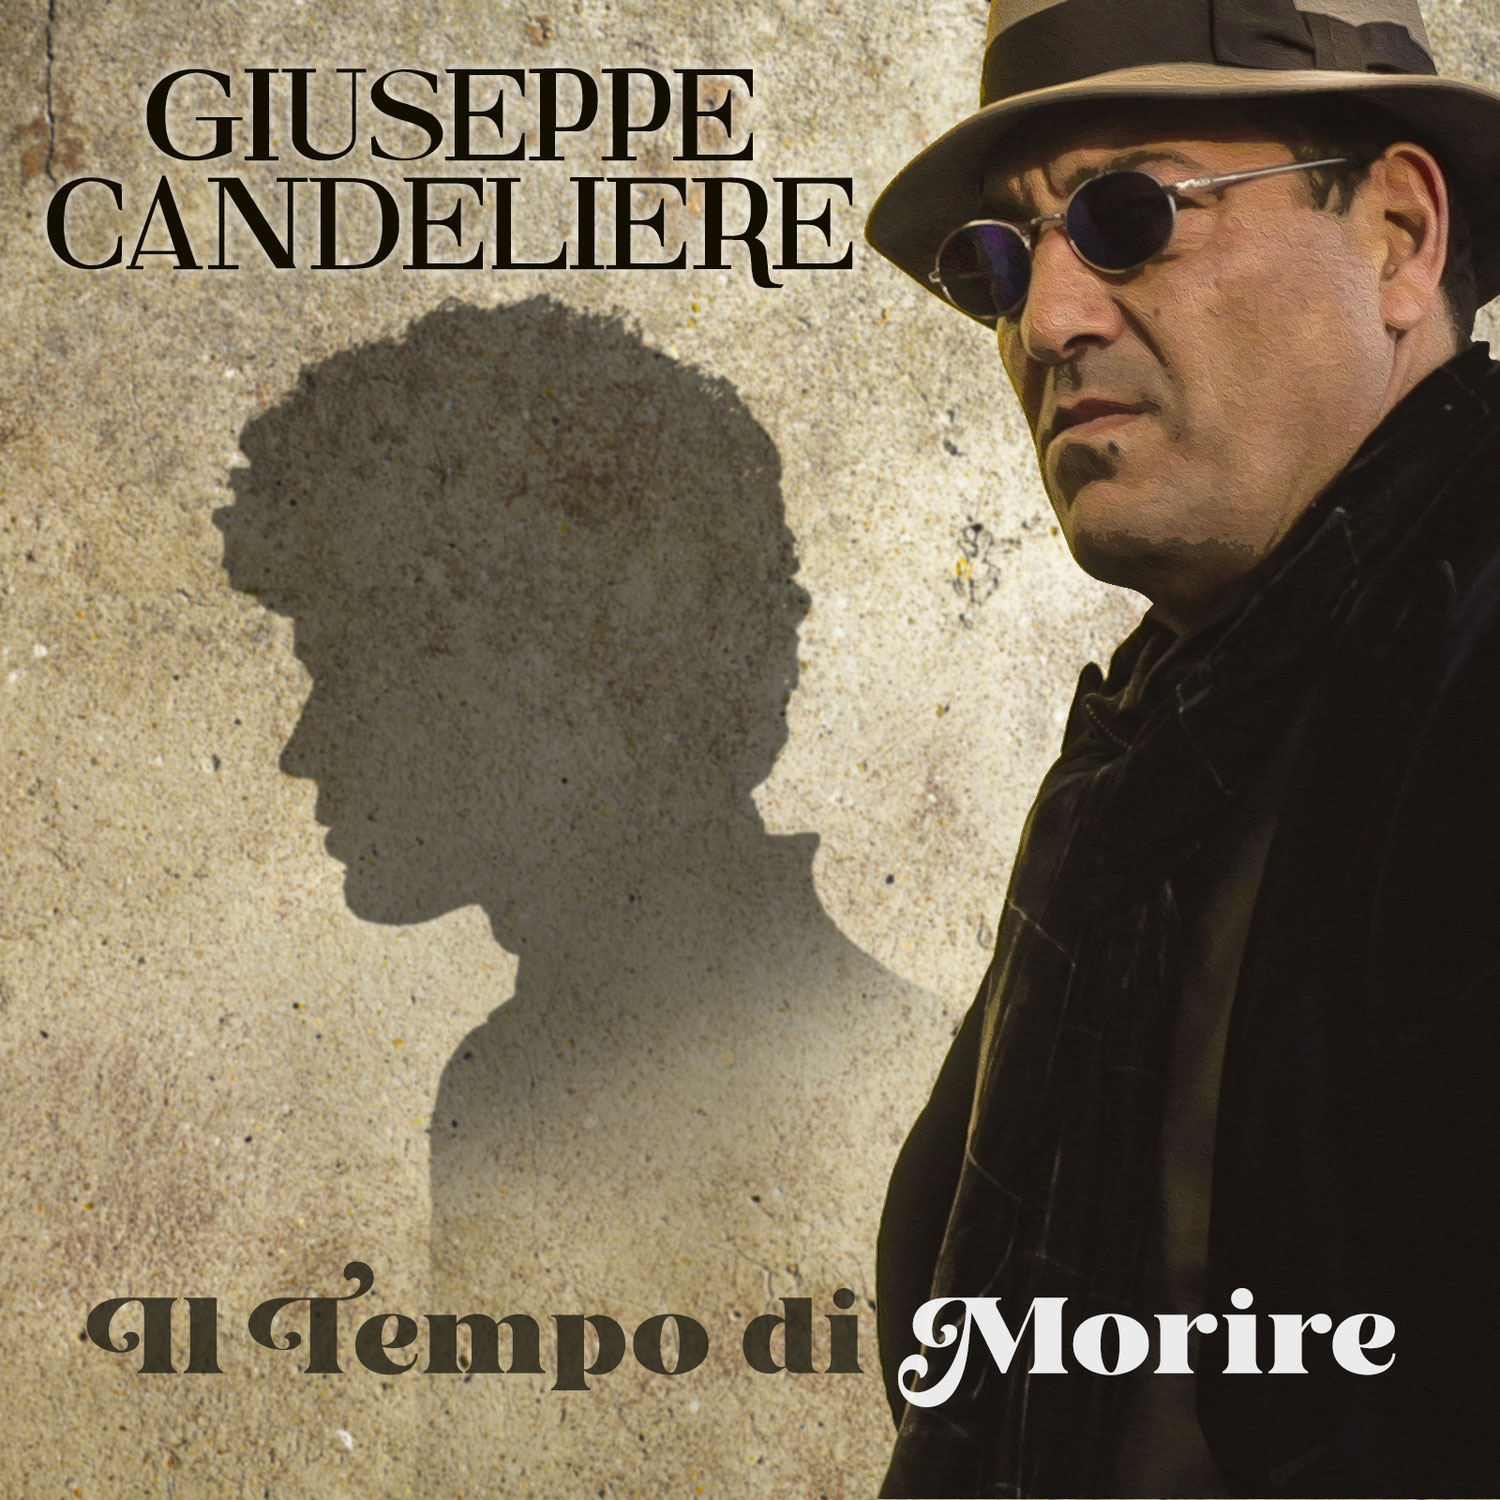 "IL TEMPO DI MORIRE" - E' online il nuovo singolo/cover di Giuseppe Candeliere!